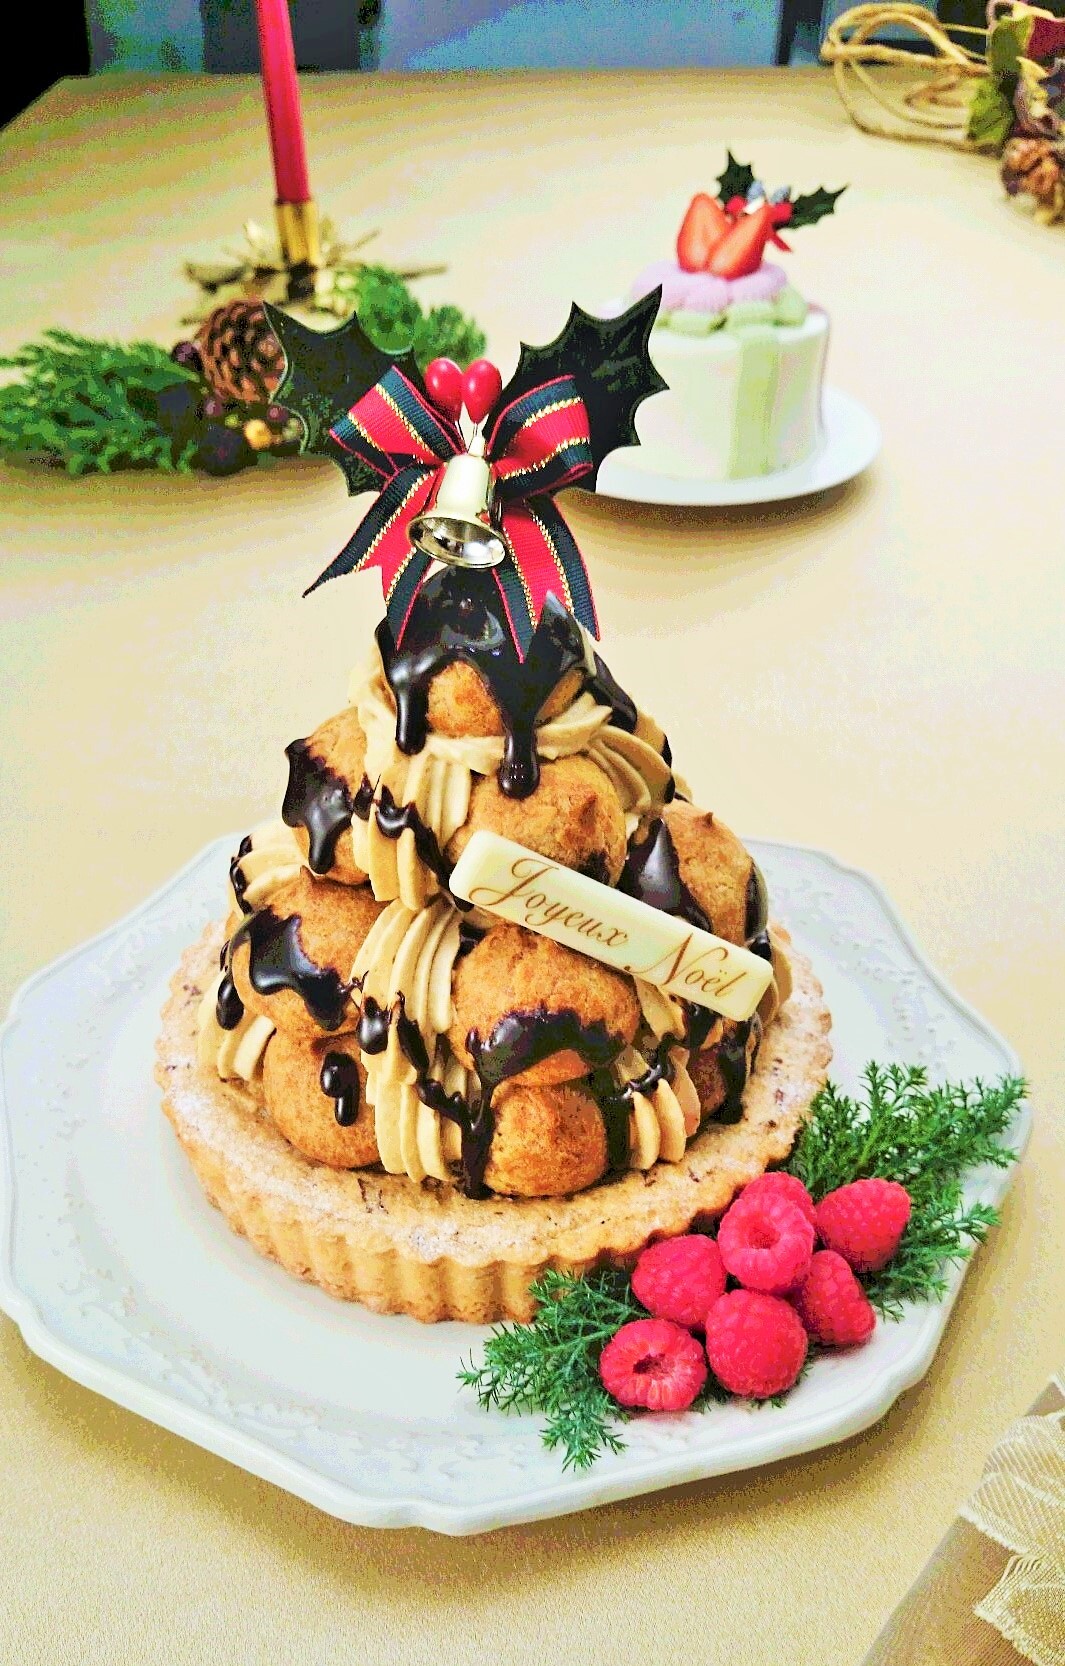 食べるクリスマスツリー 予約開始 シュークリーム16個のピラミッド 2つのフランス伝統ケーキが融合 池尻の人気ビストロ監修 シューとタルトで2度おいしい ビストロエガリテのプレスリリース